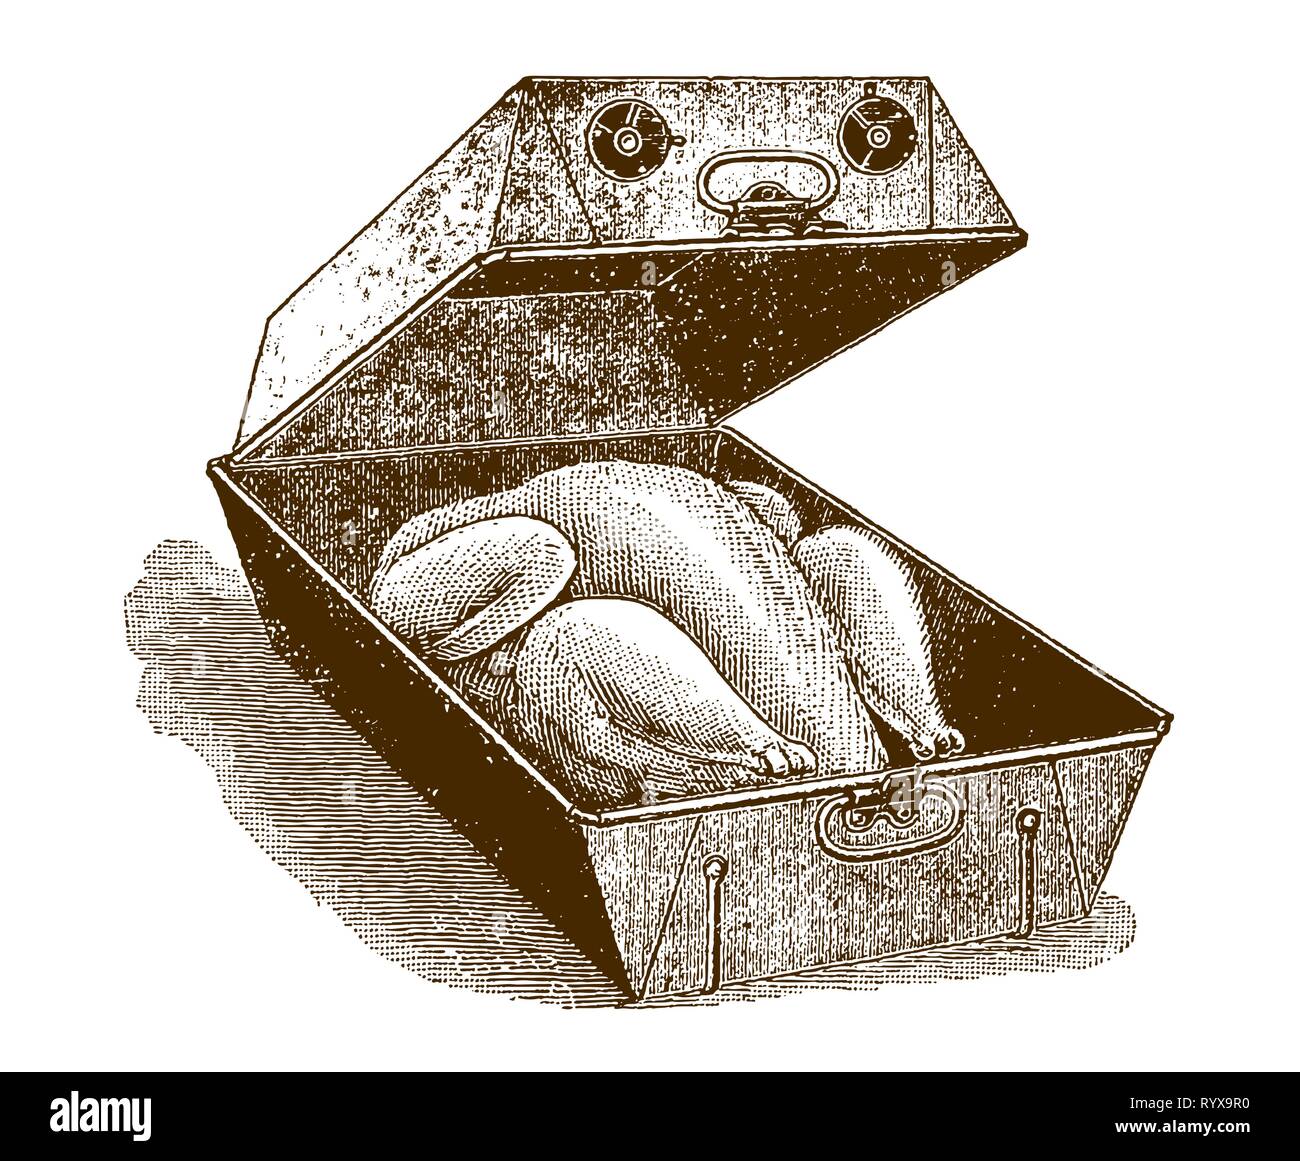 La Turquie dans un torréfacteur historique ou baker (après une gravure ou la gravure du xixe siècle) Illustration de Vecteur